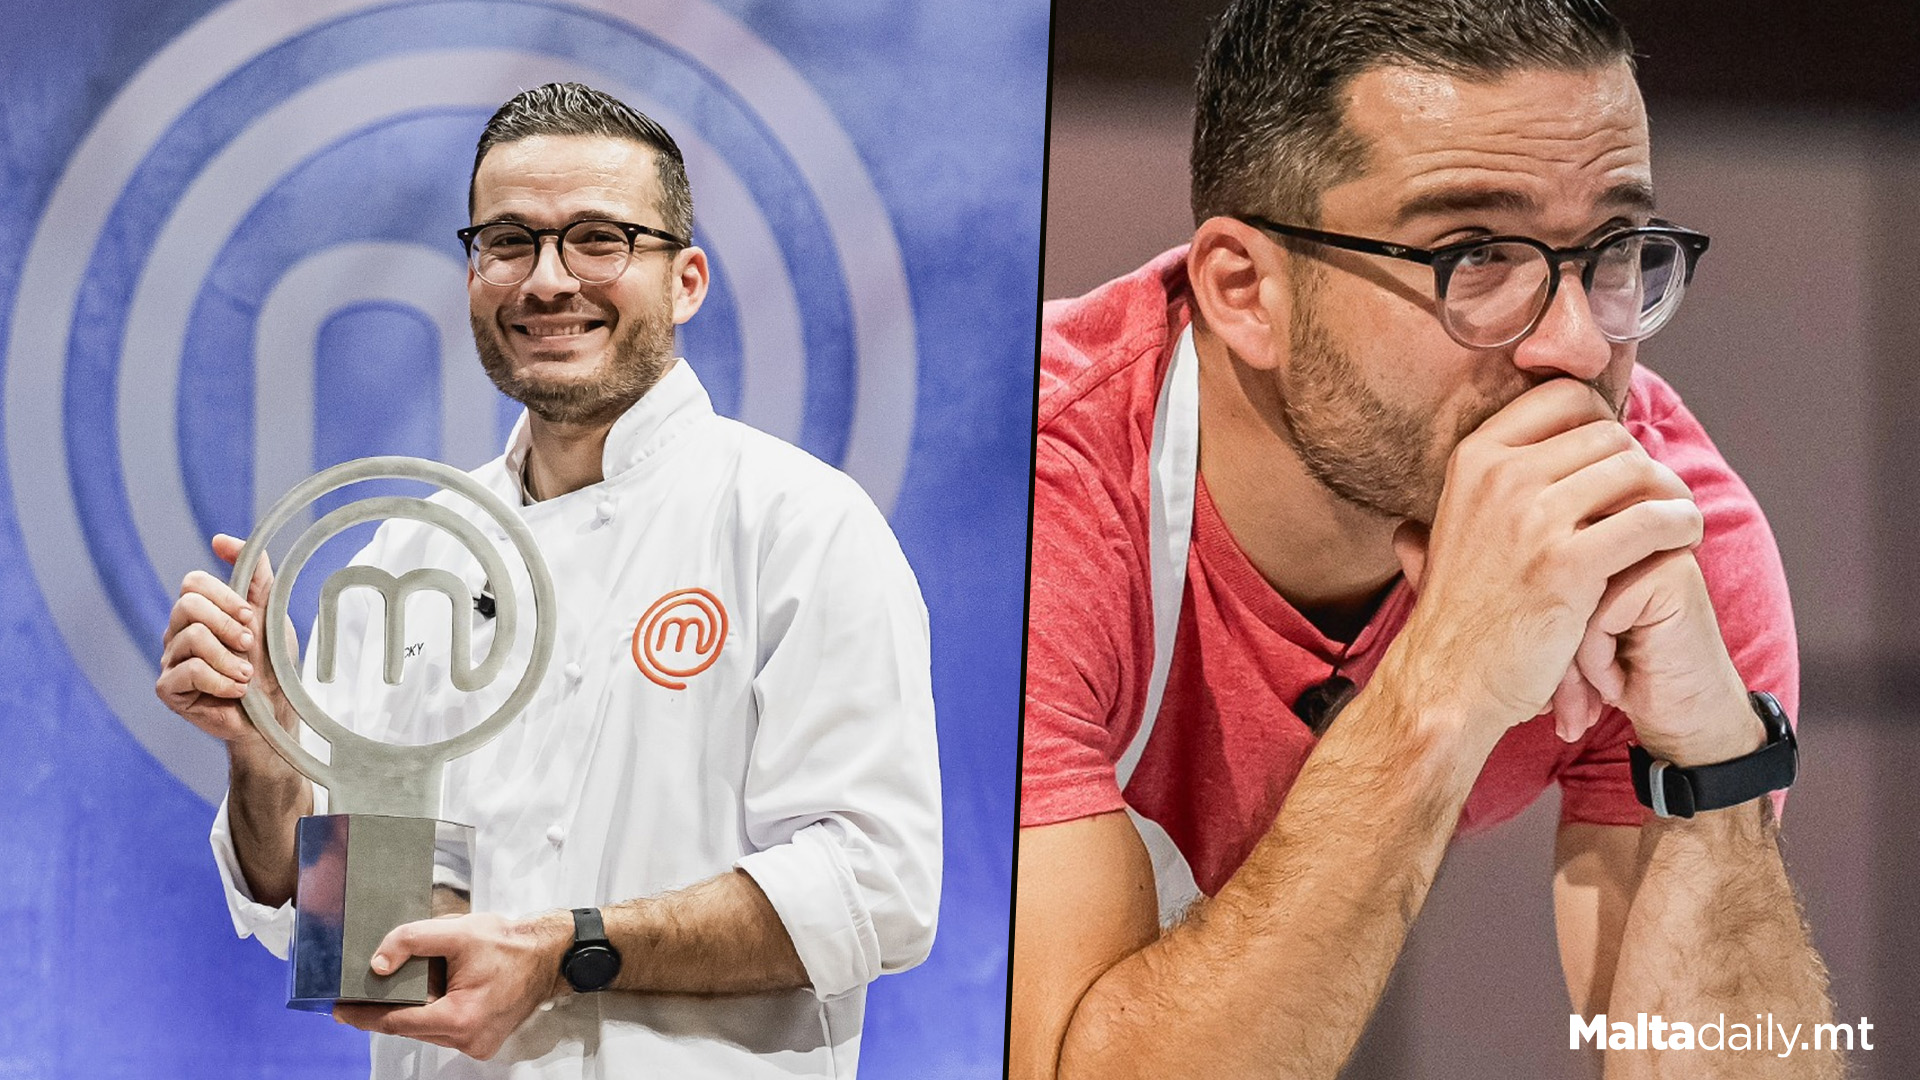 Nicolas Bezzina Wins Master Chef Malta Season 1